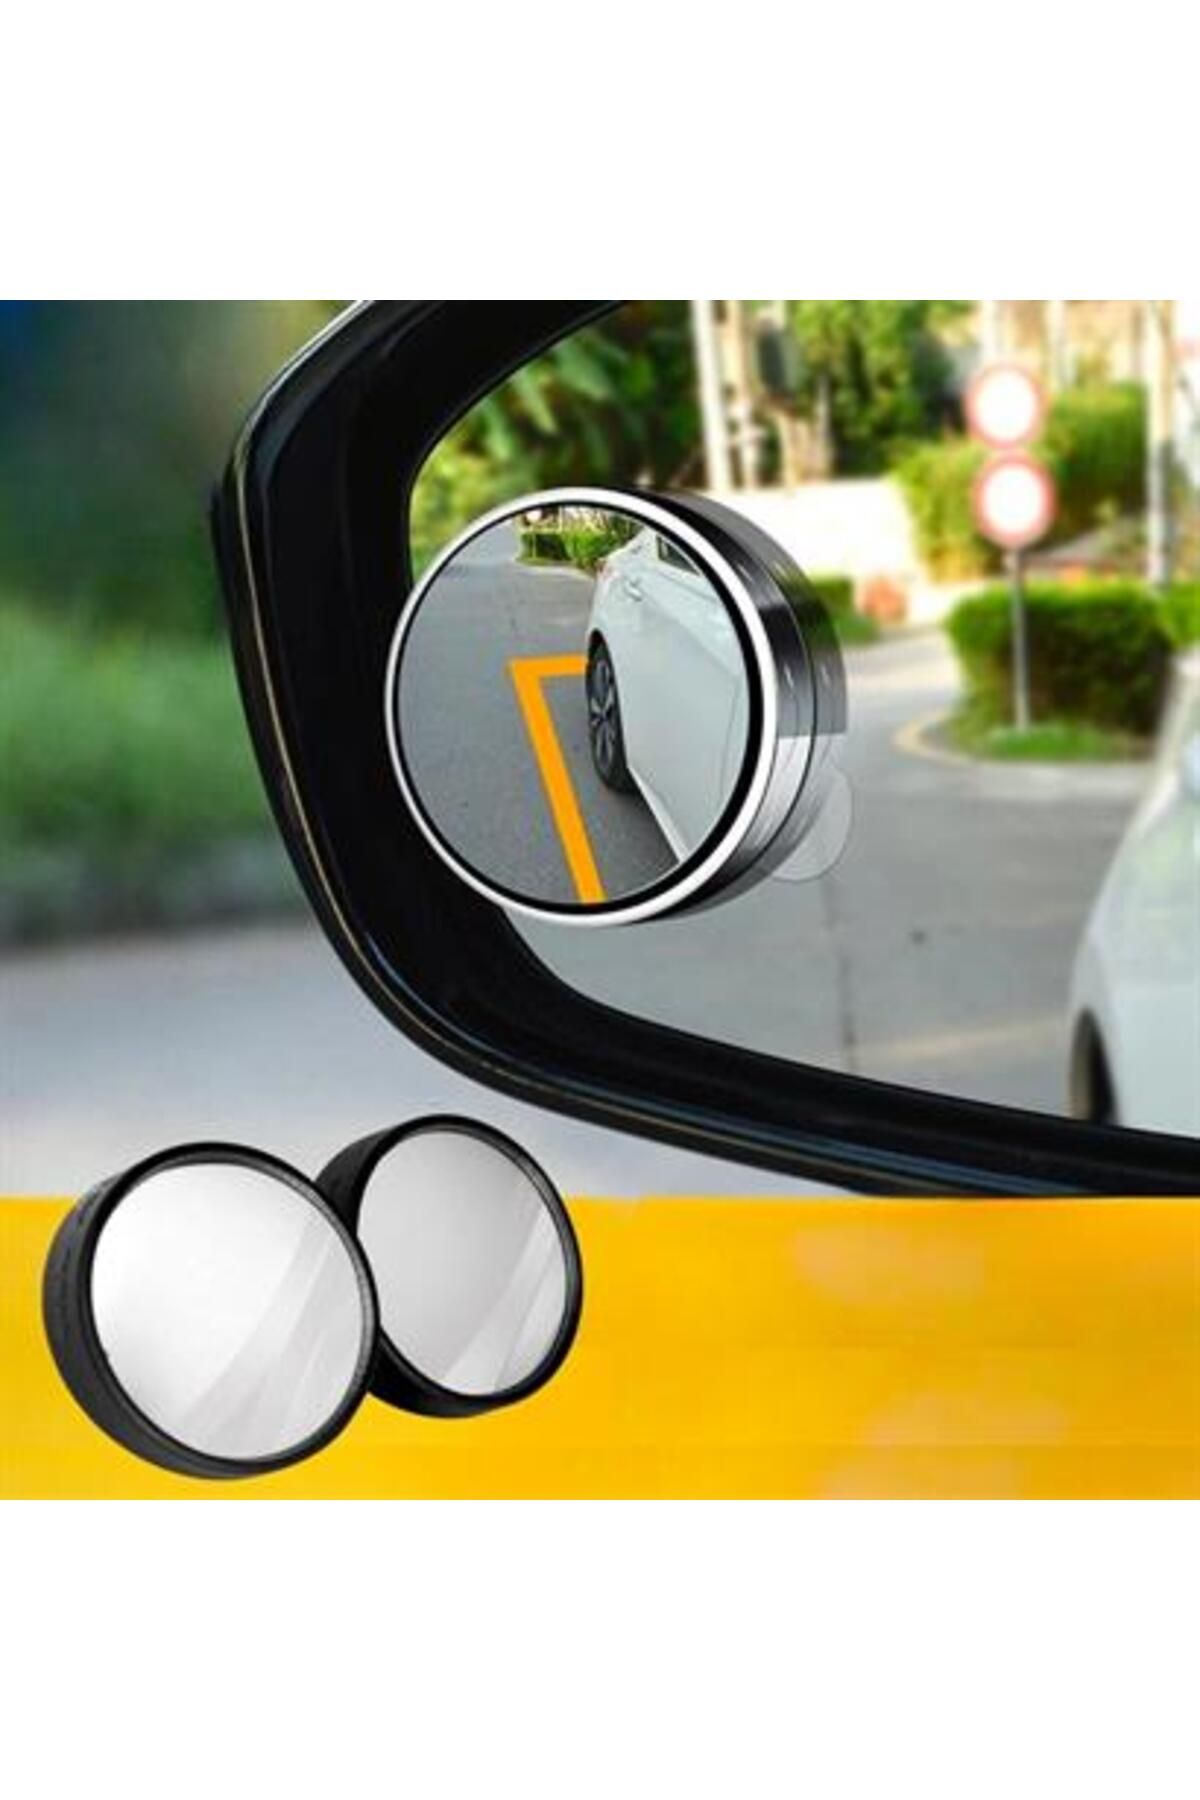 Genel Markalar Otomobil Geniş Açılı Araç Kör Nokta Dikiz Aynası Dikiz Aynası 1 Çift (4202)